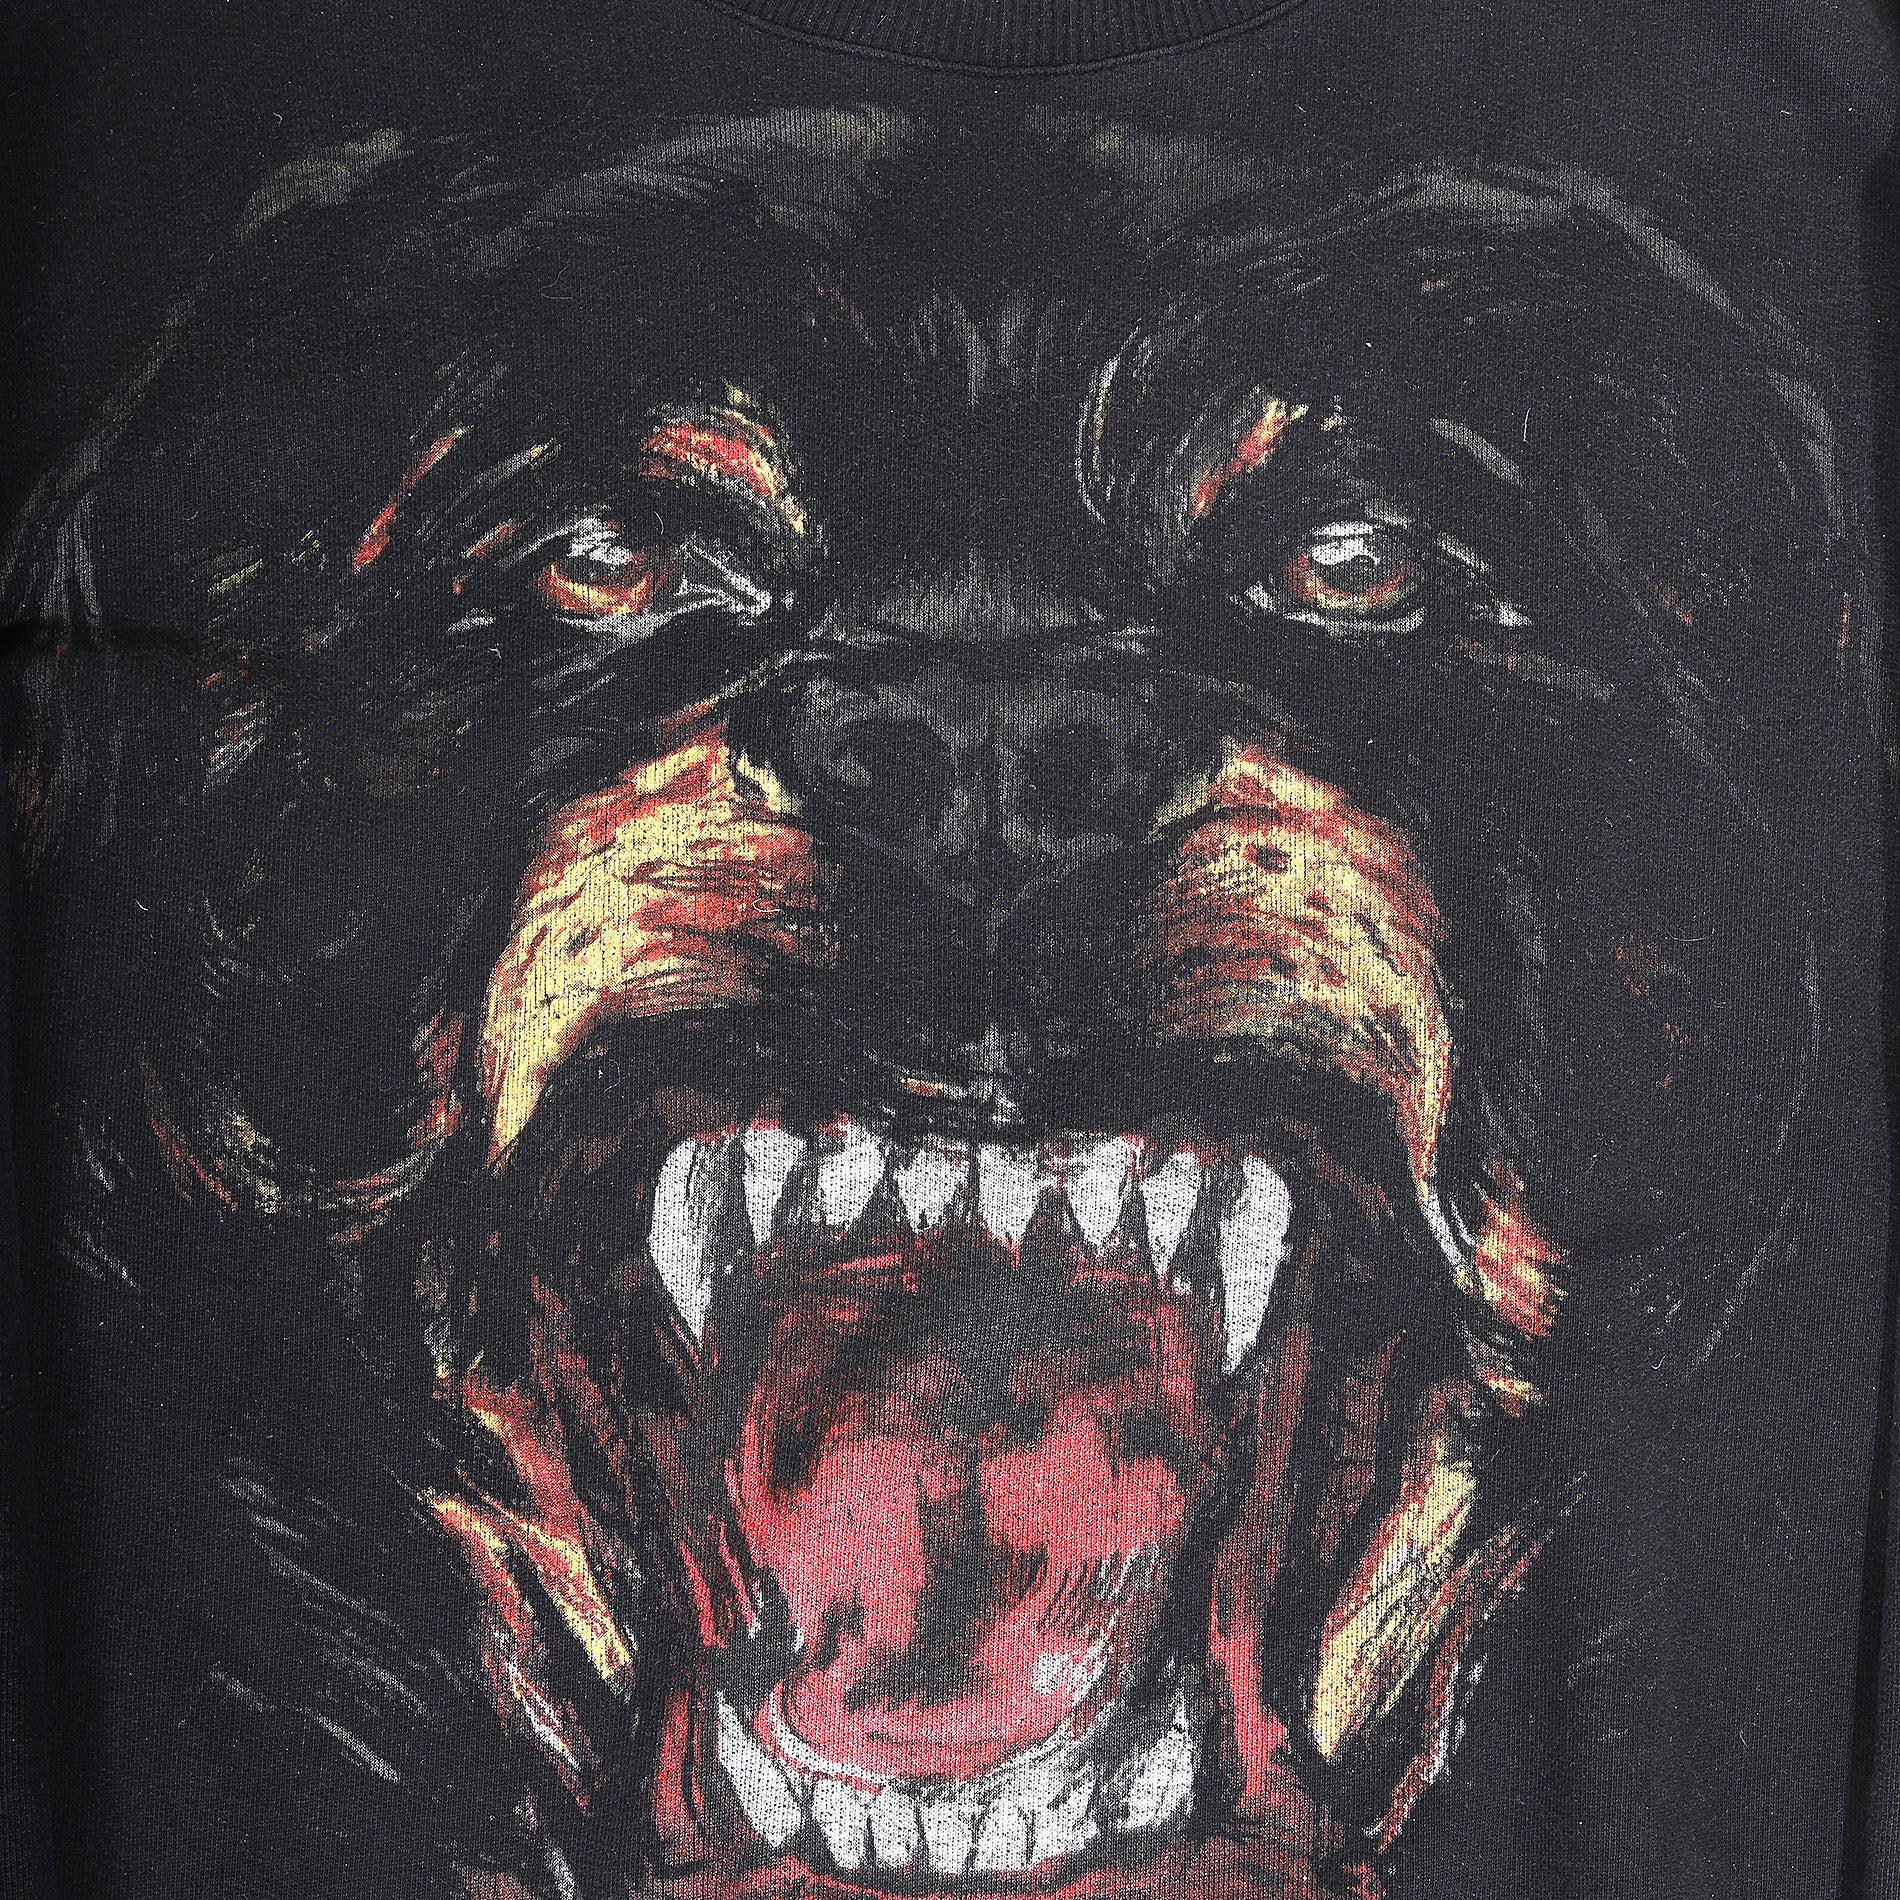 Givenchy FW11 Rottweiler Sweatshirt